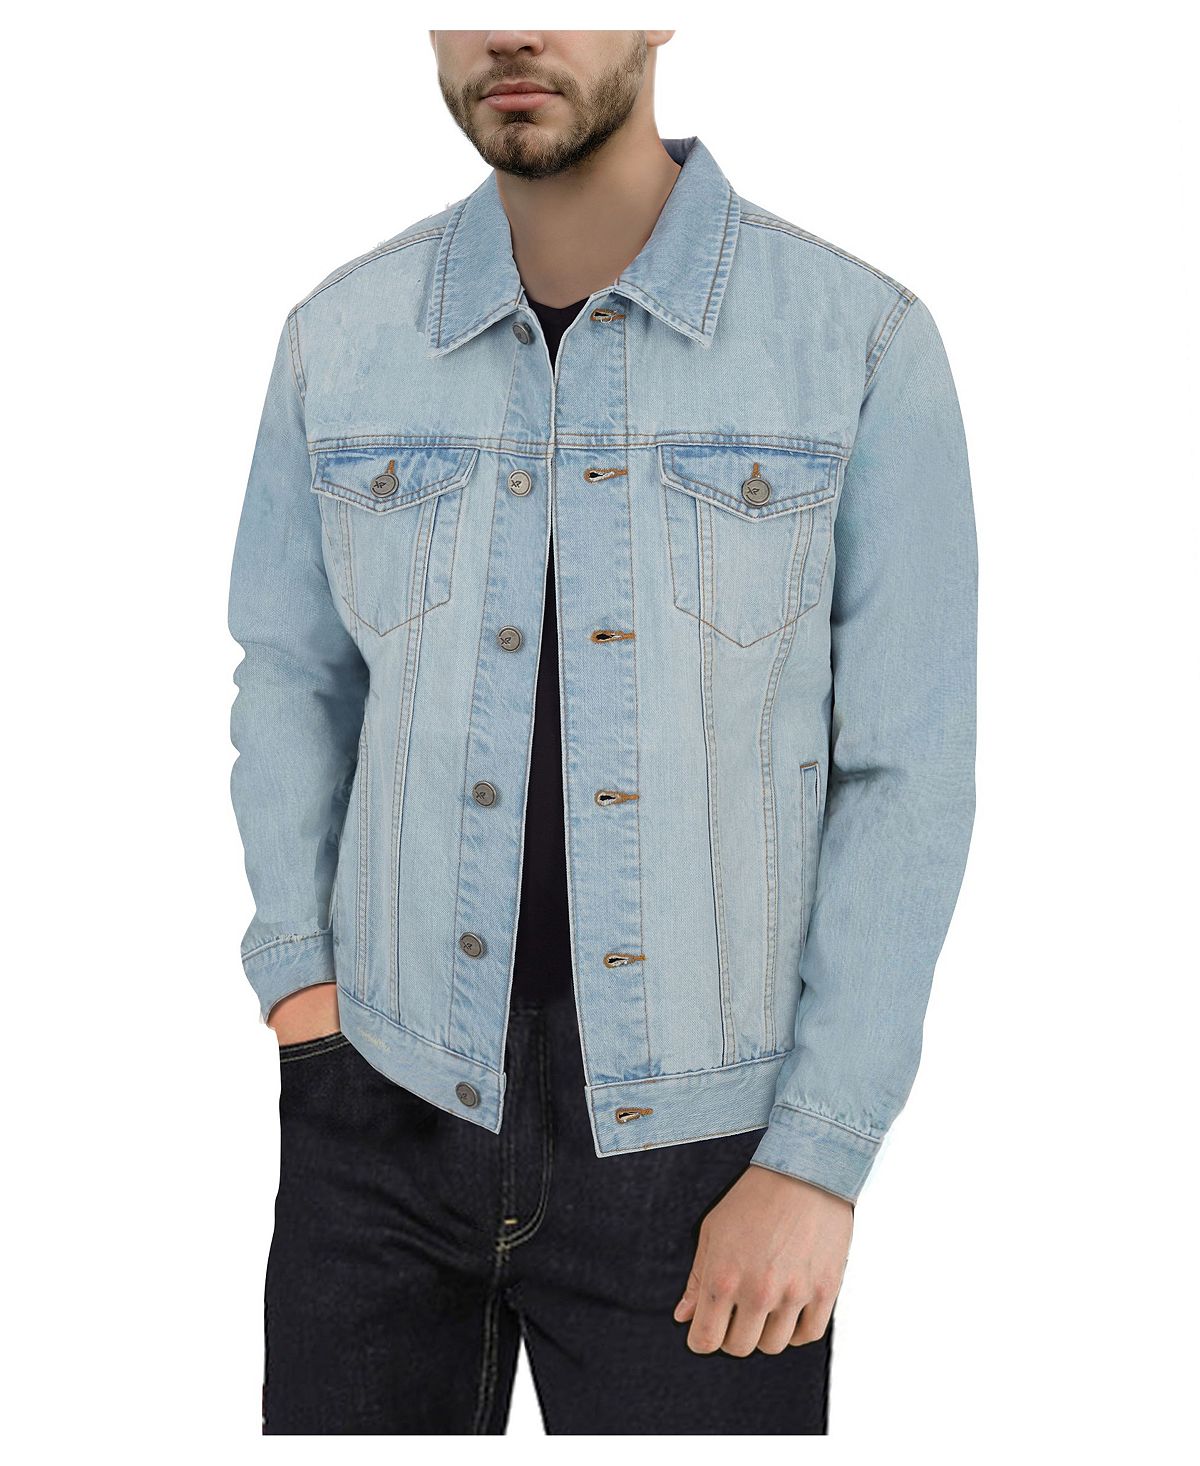 Мужская приталенная джинсовая куртка с эффектом потертости X-Ray, мульти новая джинсовая куртка мужская повседневная джинсовая куртка синяя приталенная ветровка весна осень